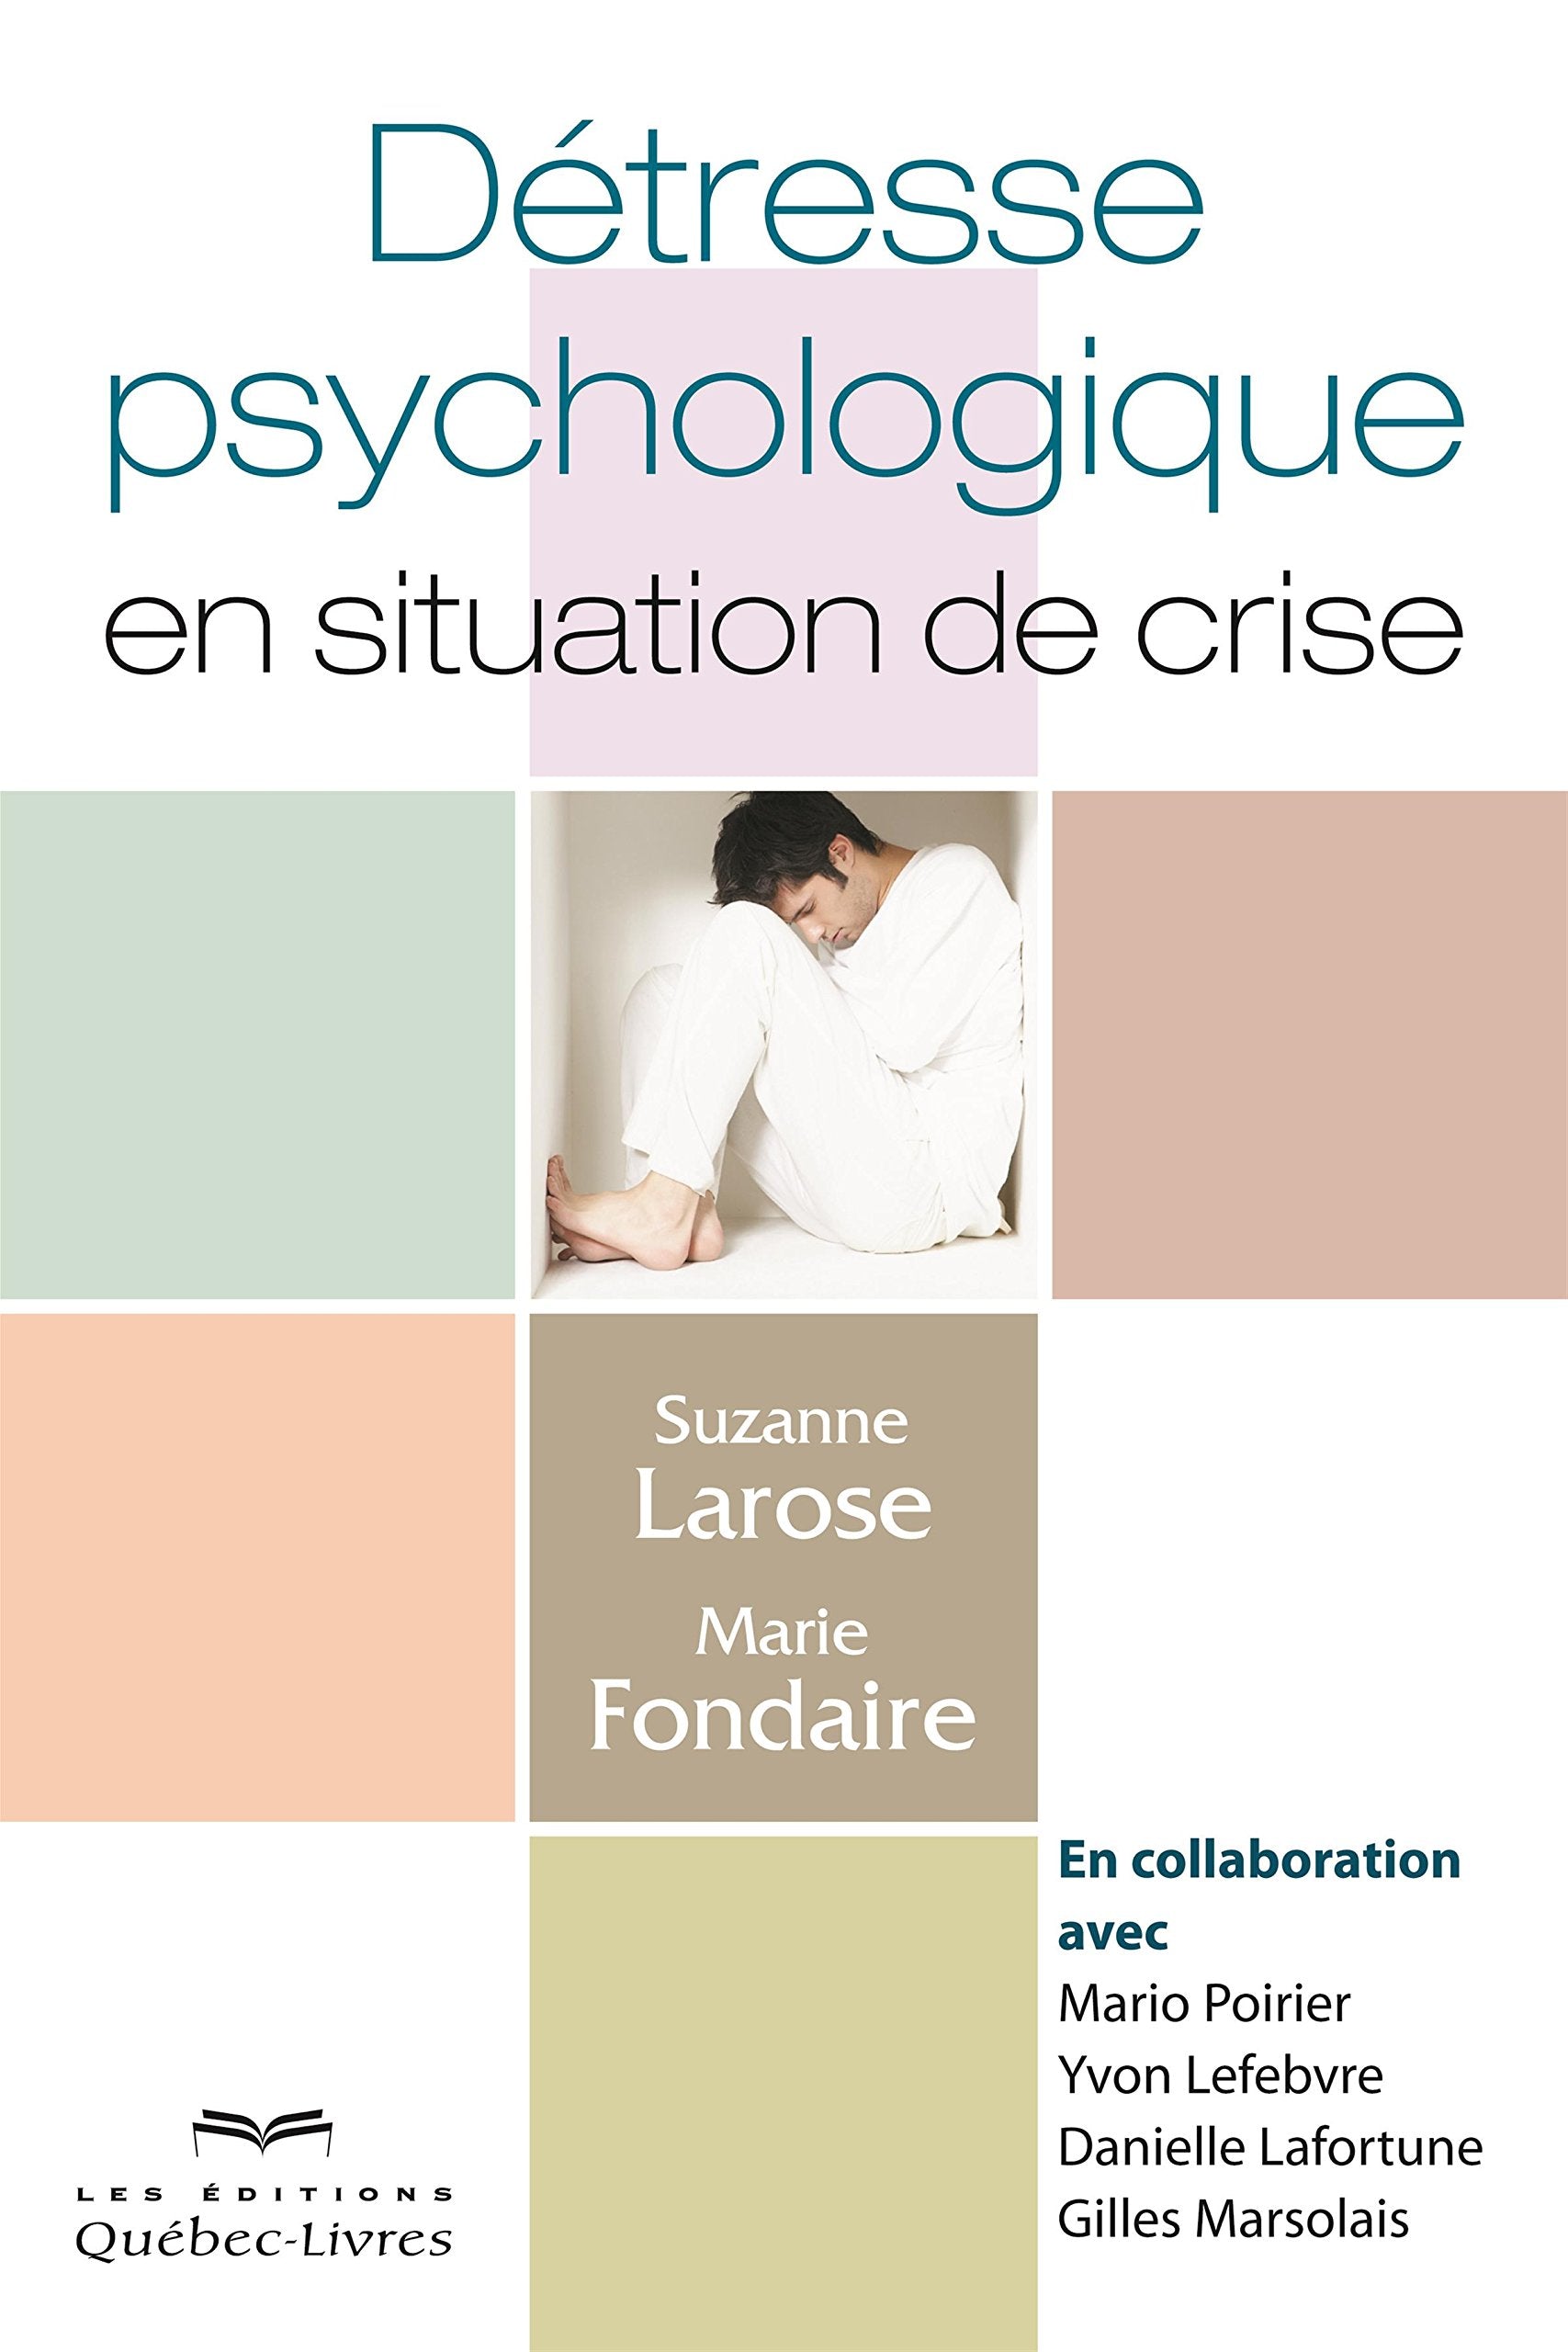 Détresse psychologique en situation de crise - Suzanne Larose